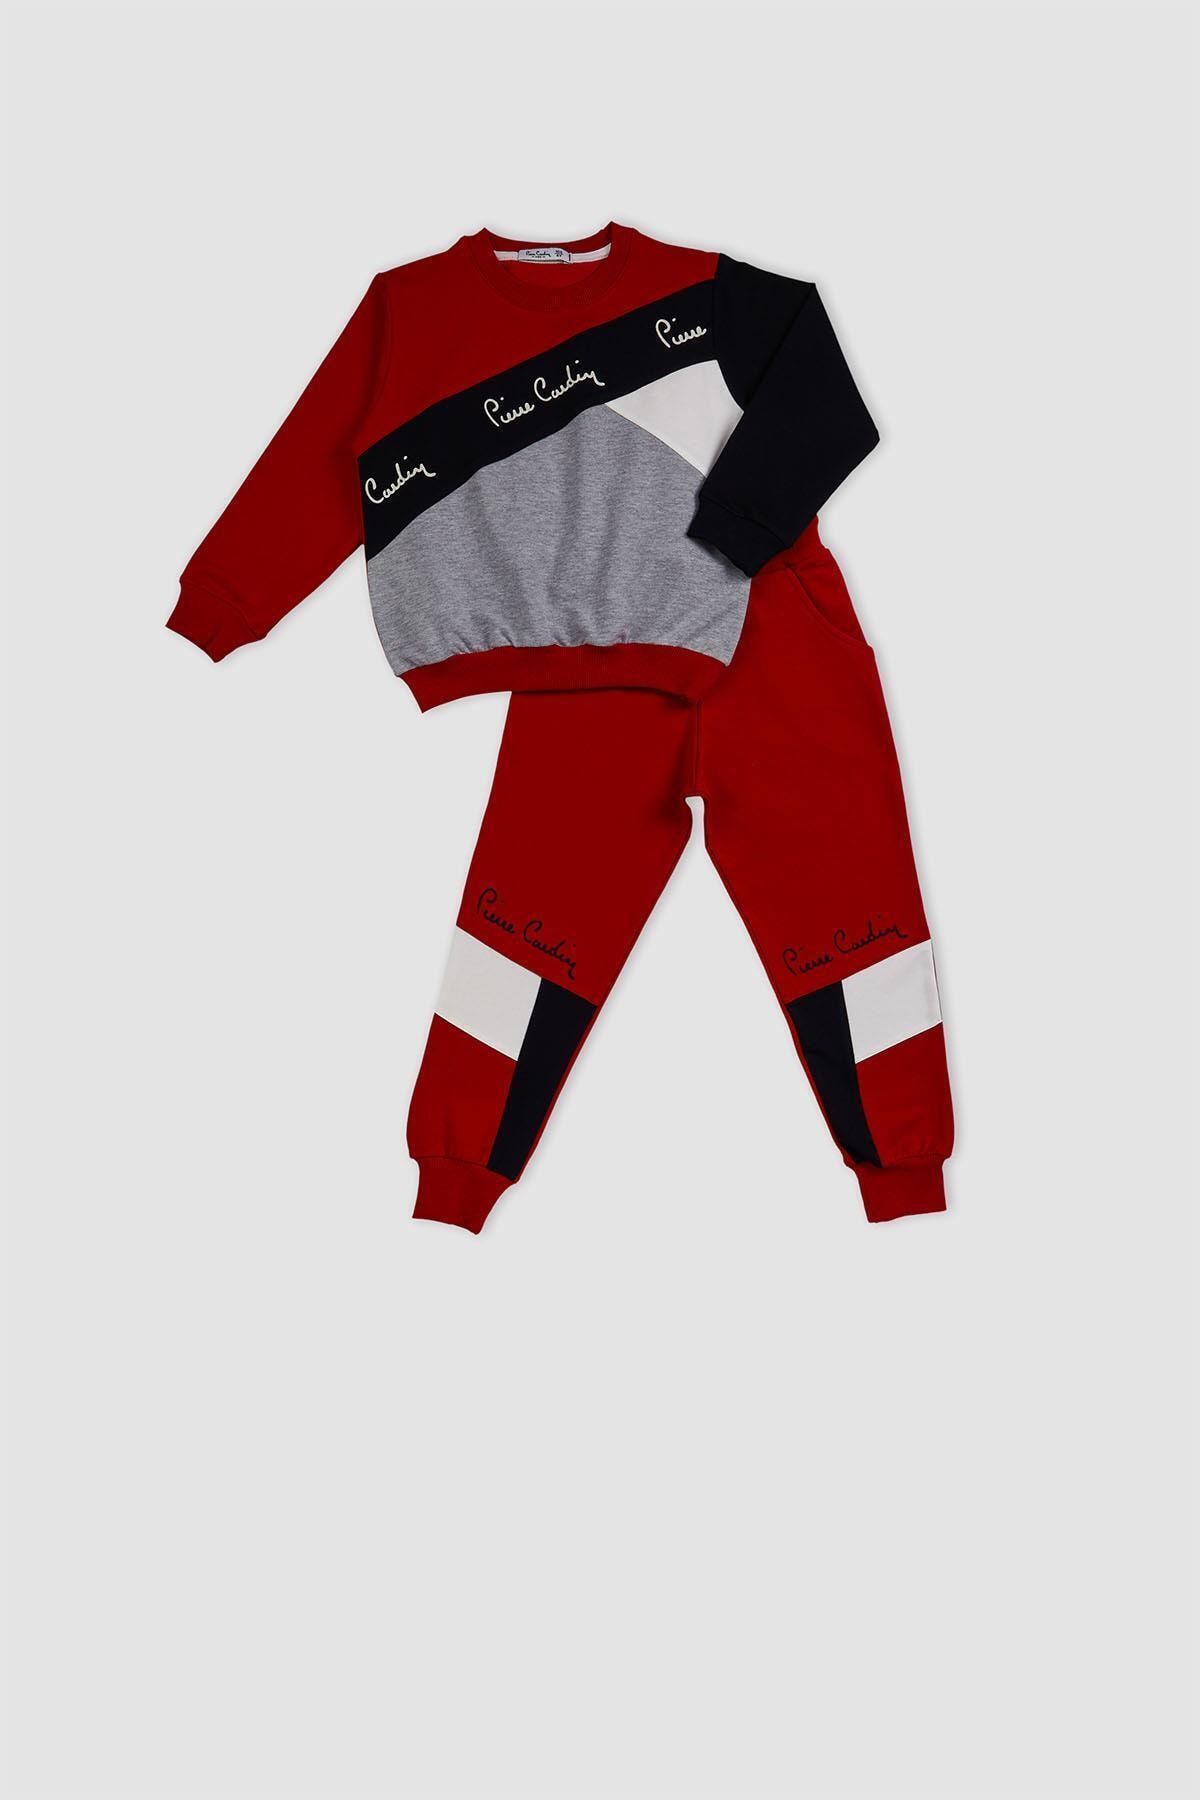 Pierre Cardin Unisex Bebek Kırmızı Kapüşonlu Takımı 302016